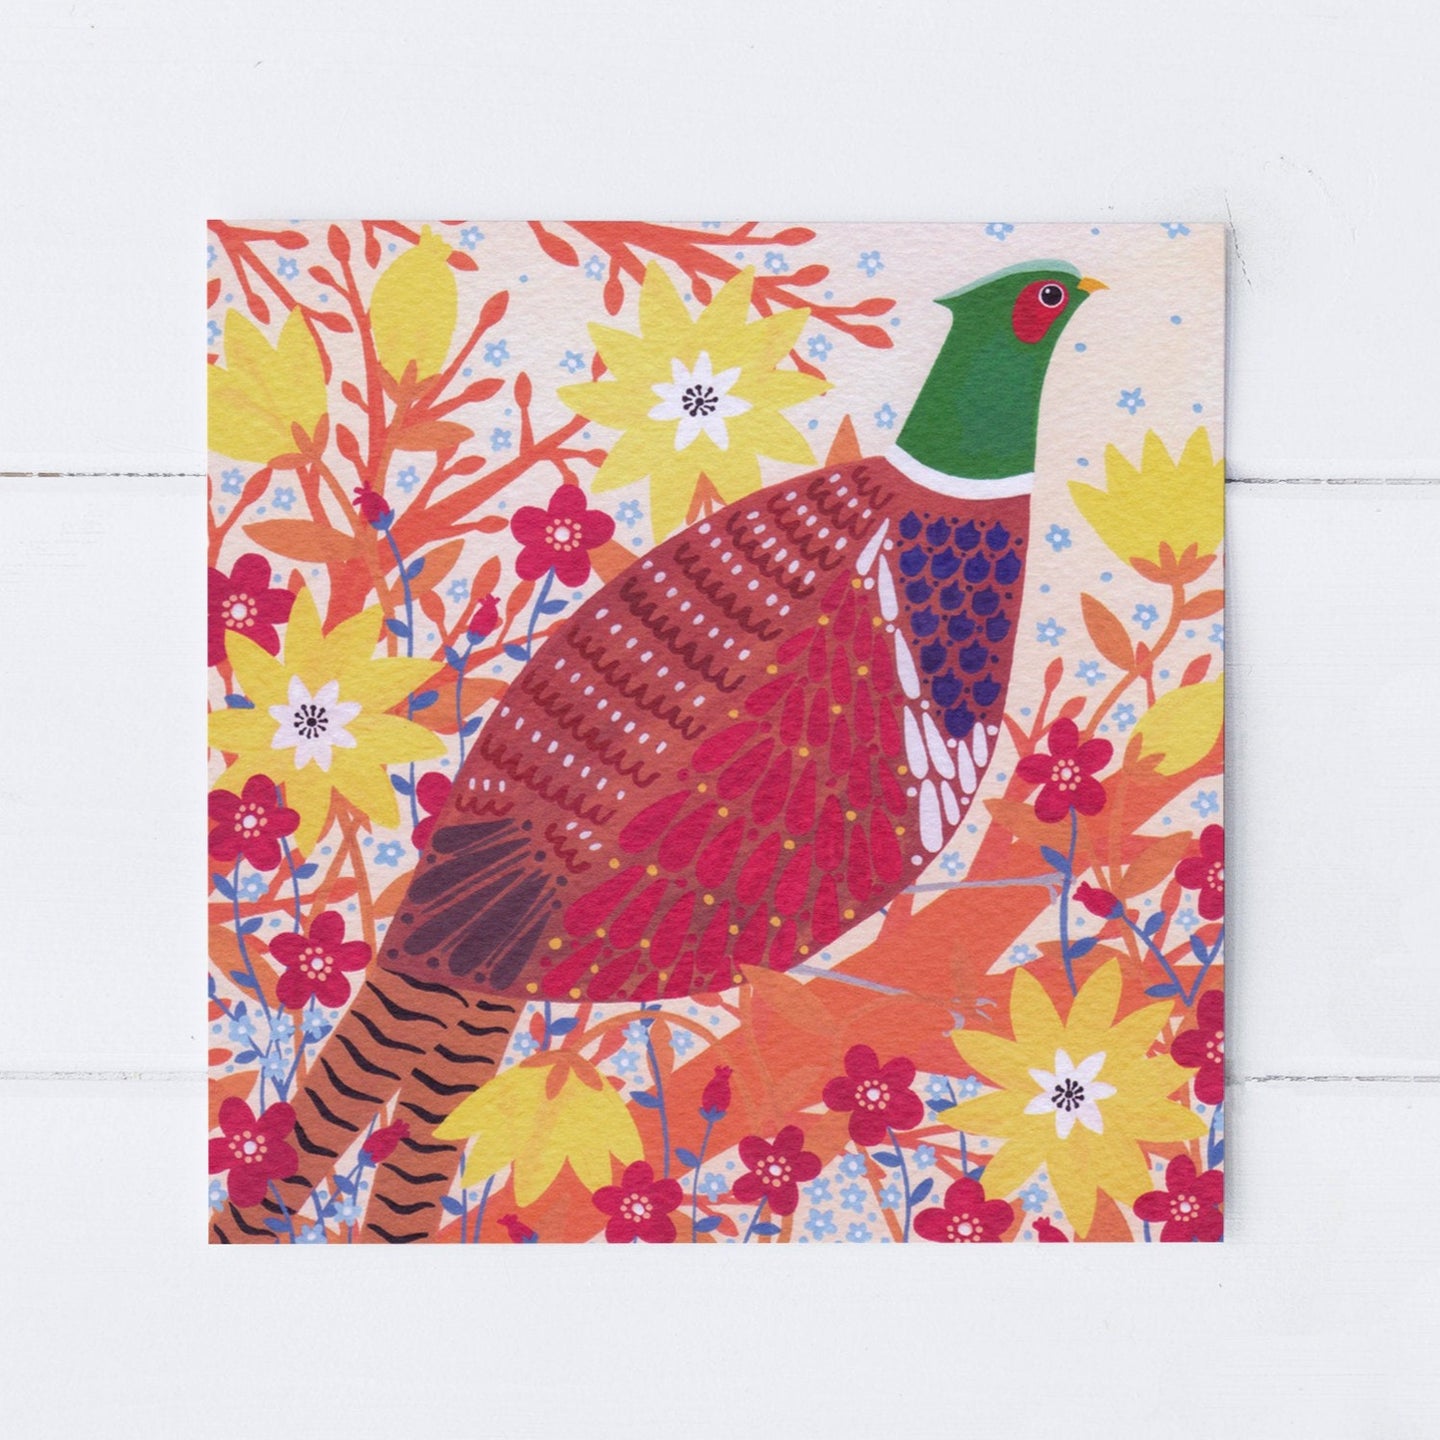 Pheasant Greeting Card